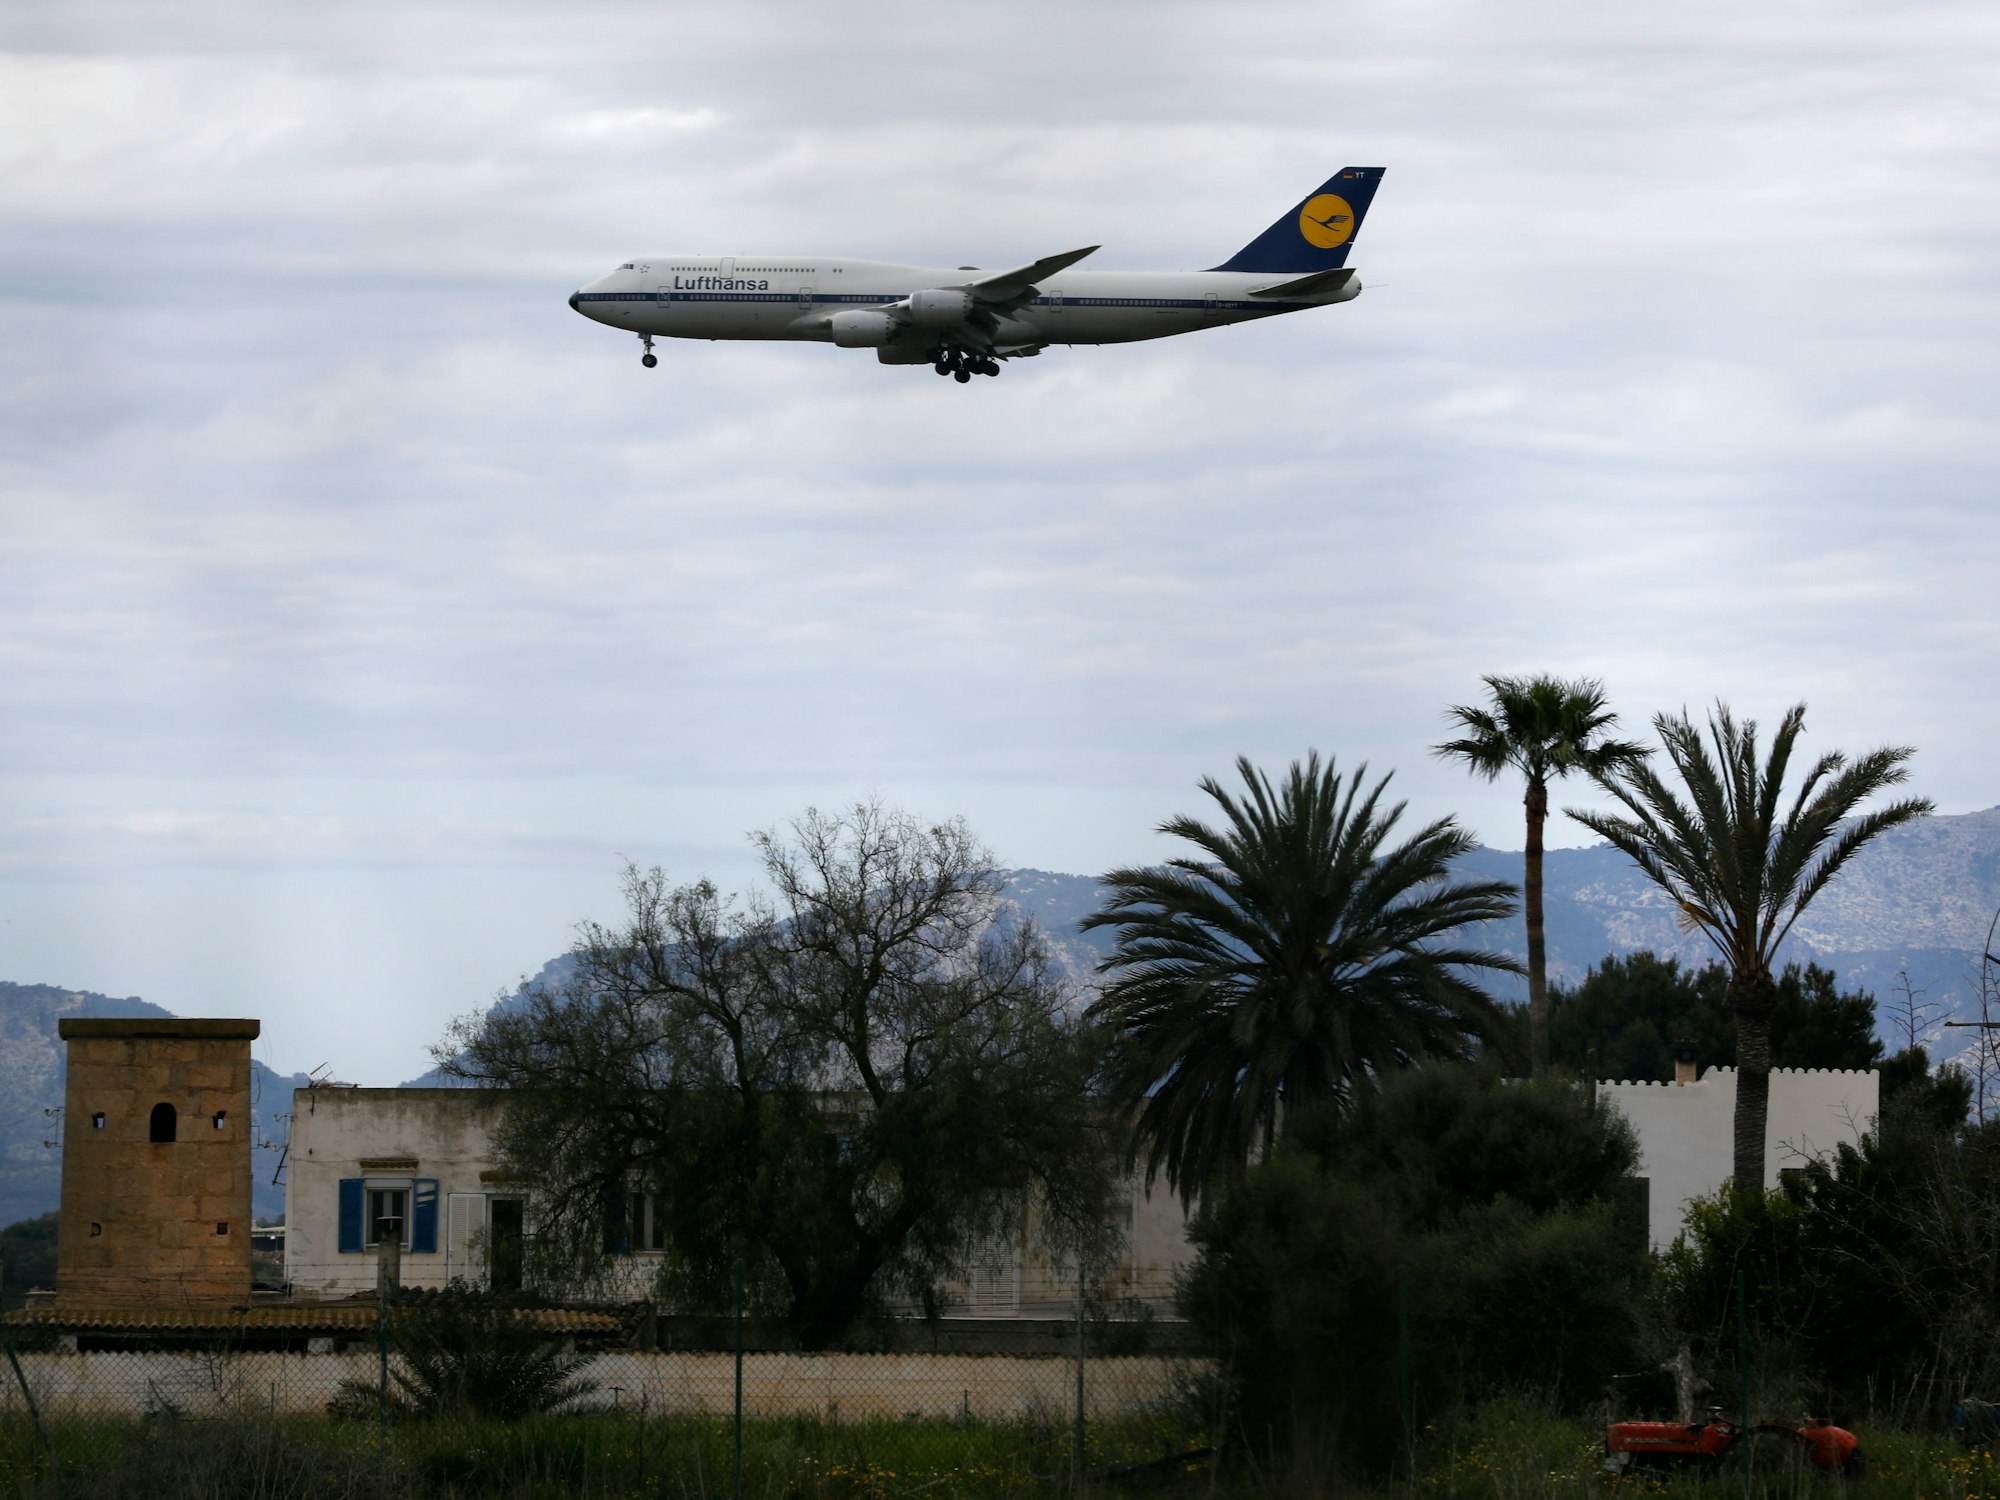 Ein Flugzeug der Lufthansa landet am Flughafen von Palma de Mallorca.